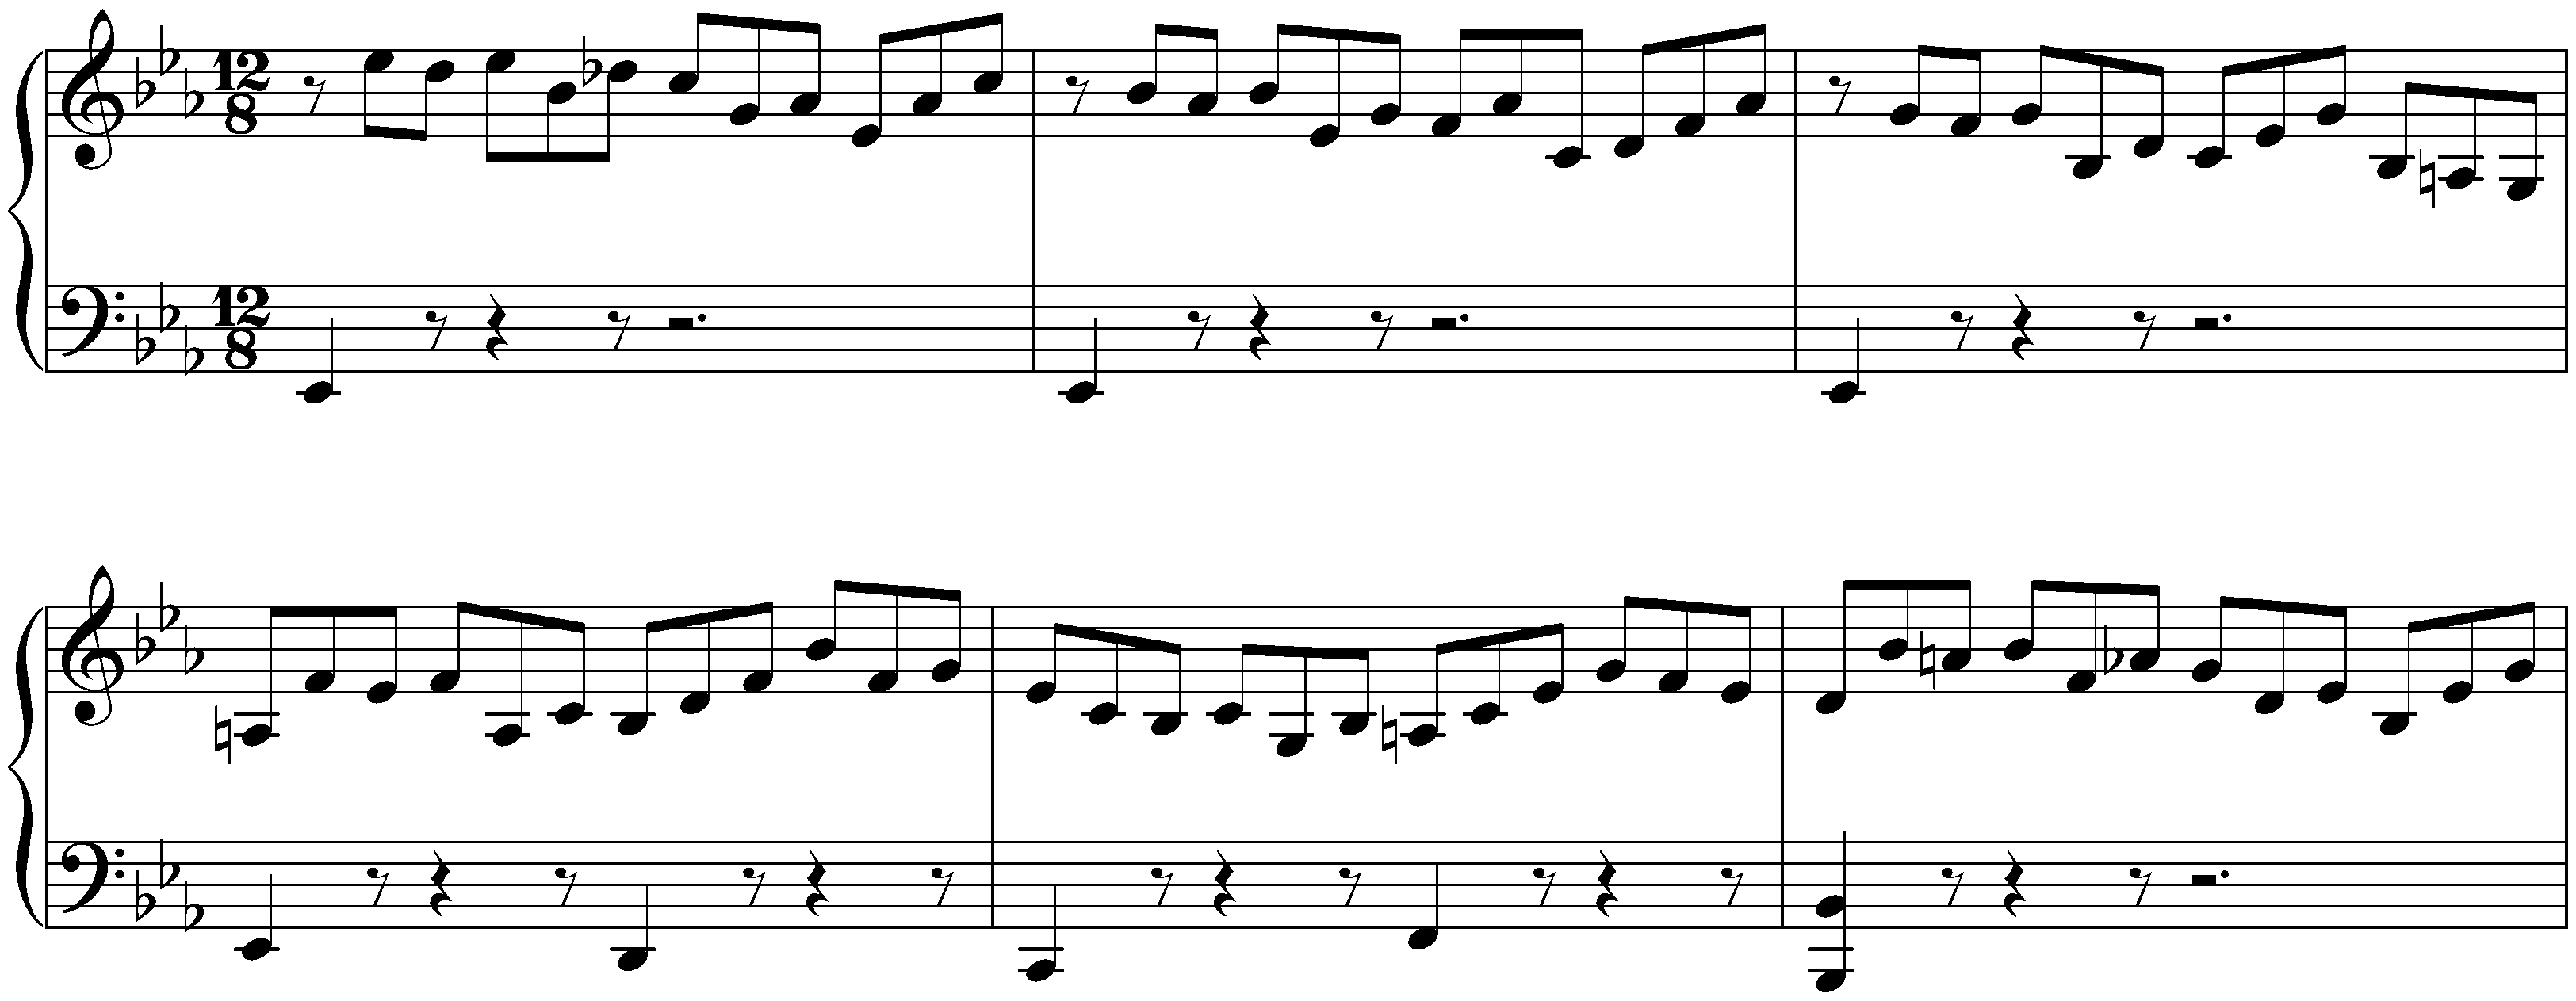 Prelude, Fugue and Allegro in E-flat major, BWV 998; 1. Prelude